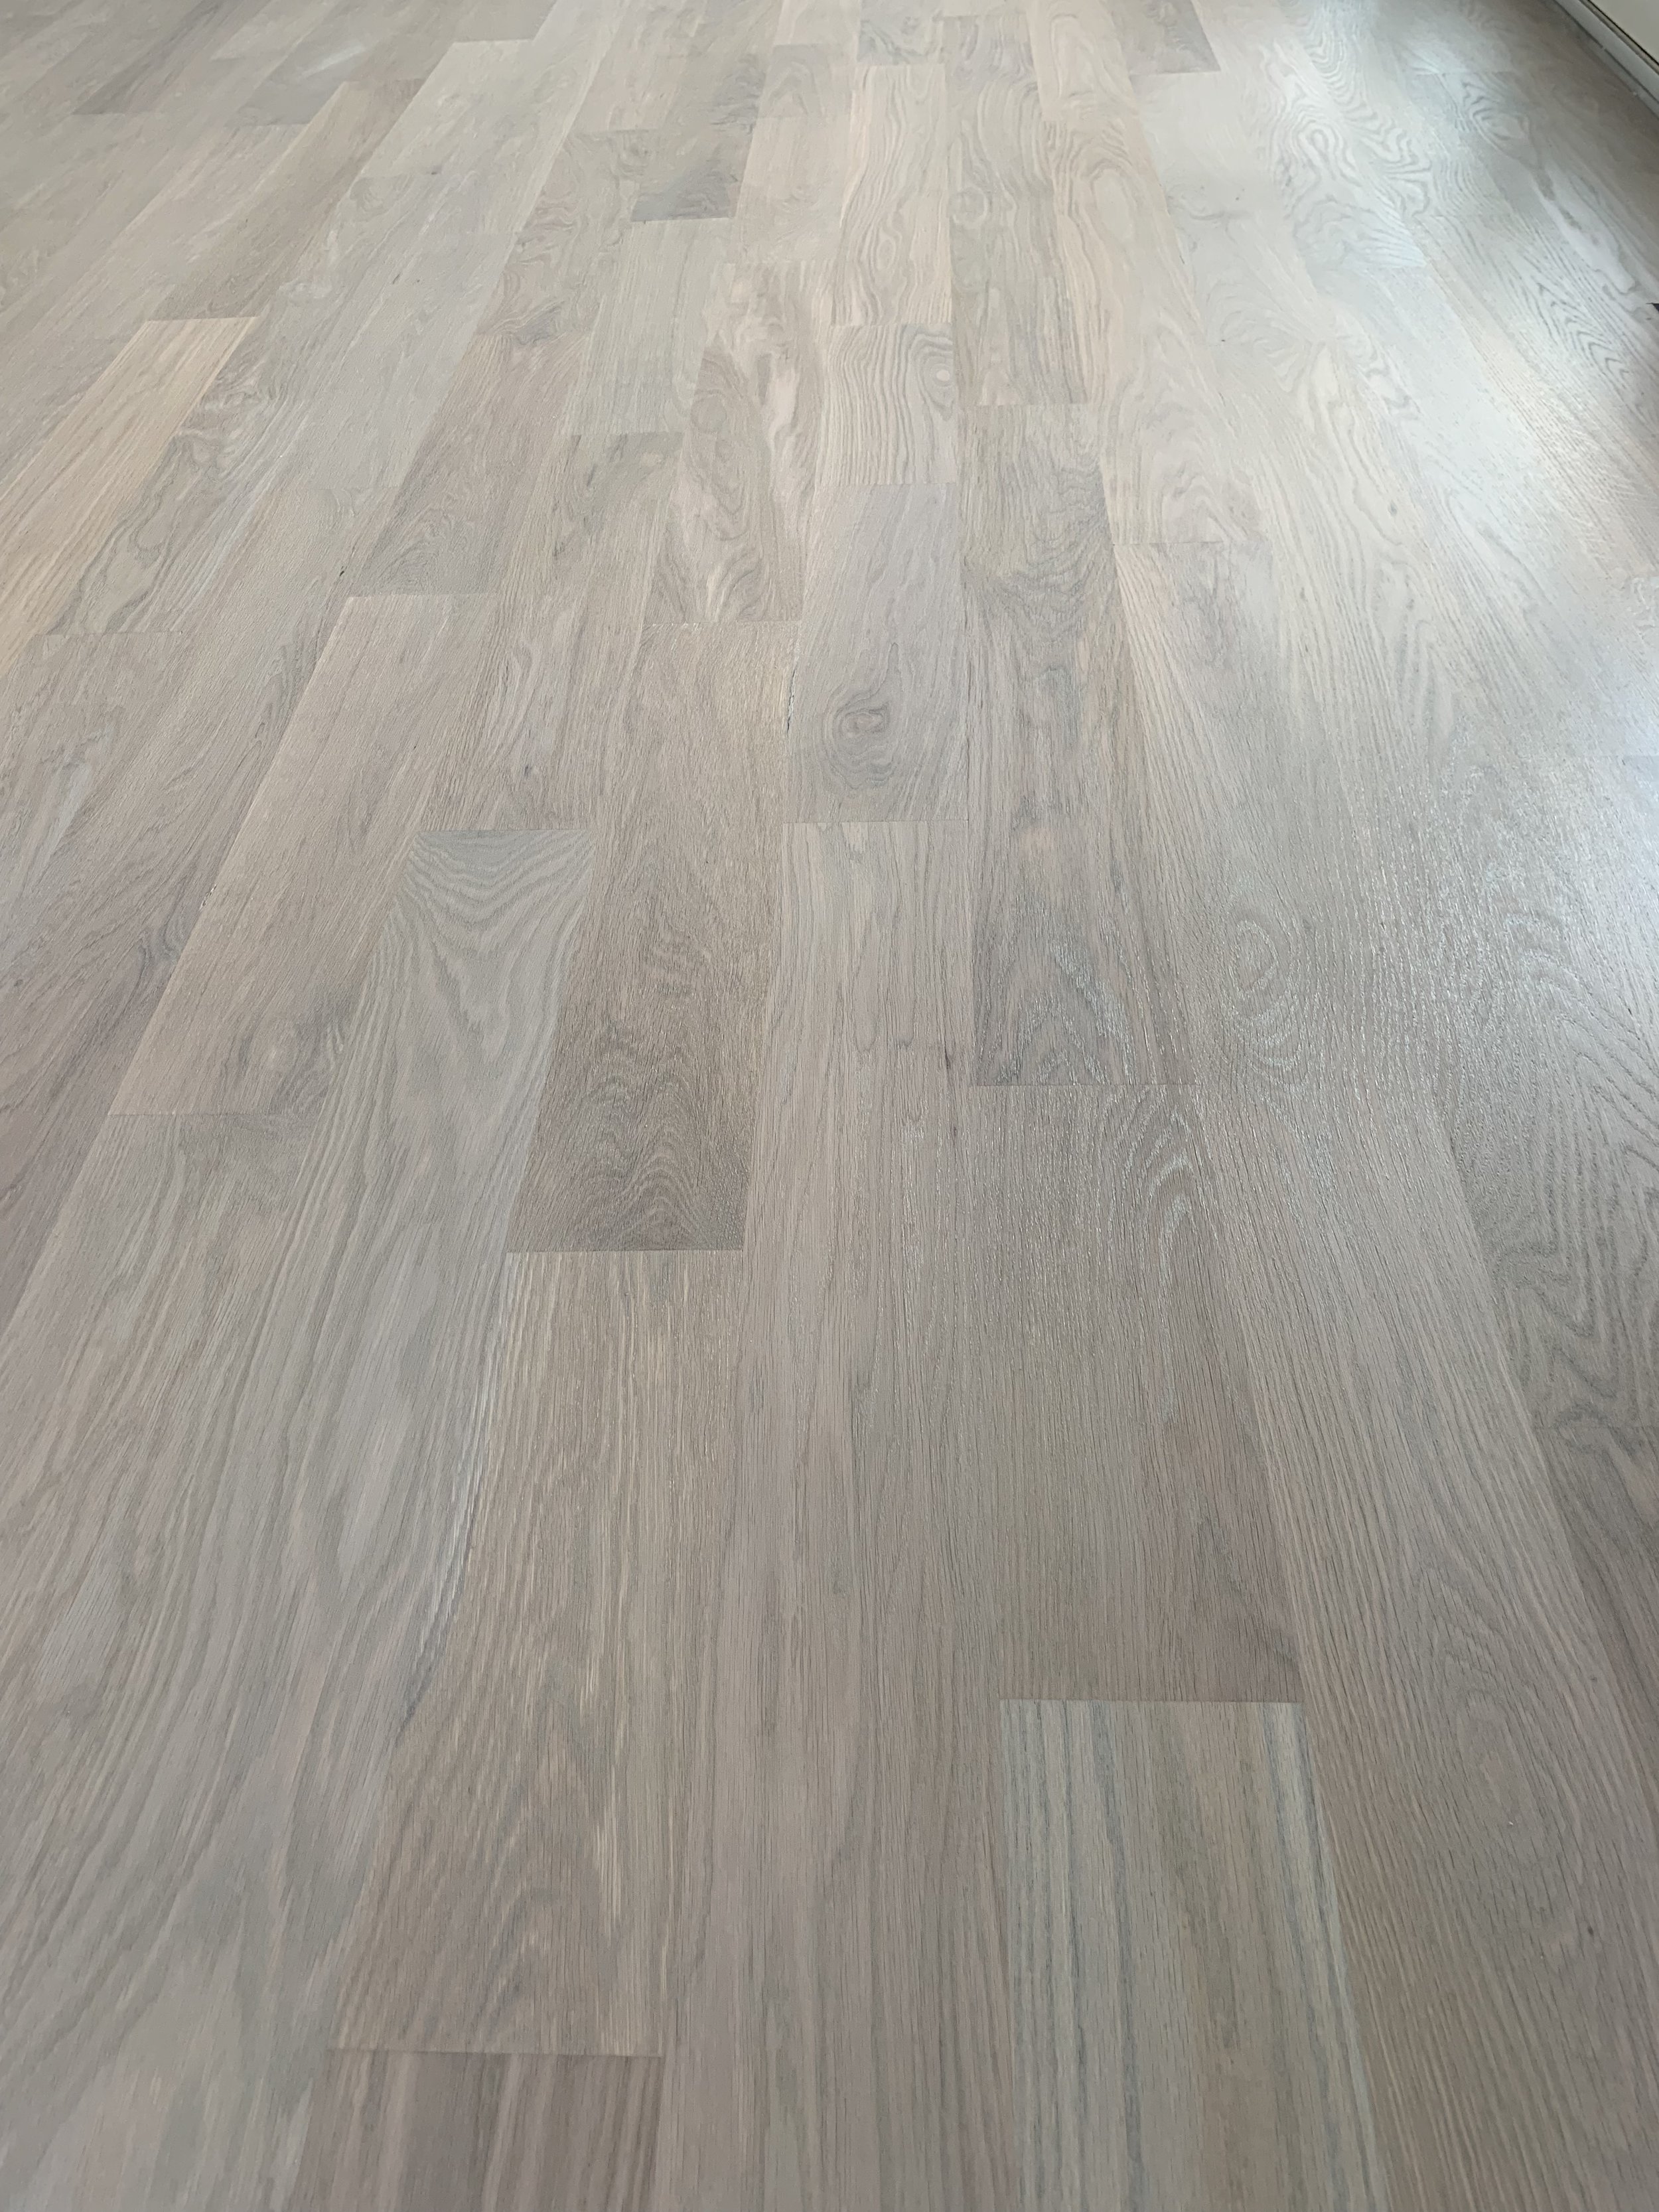 Gray Hardwood Floors, Hardwood Flooring Grey Color